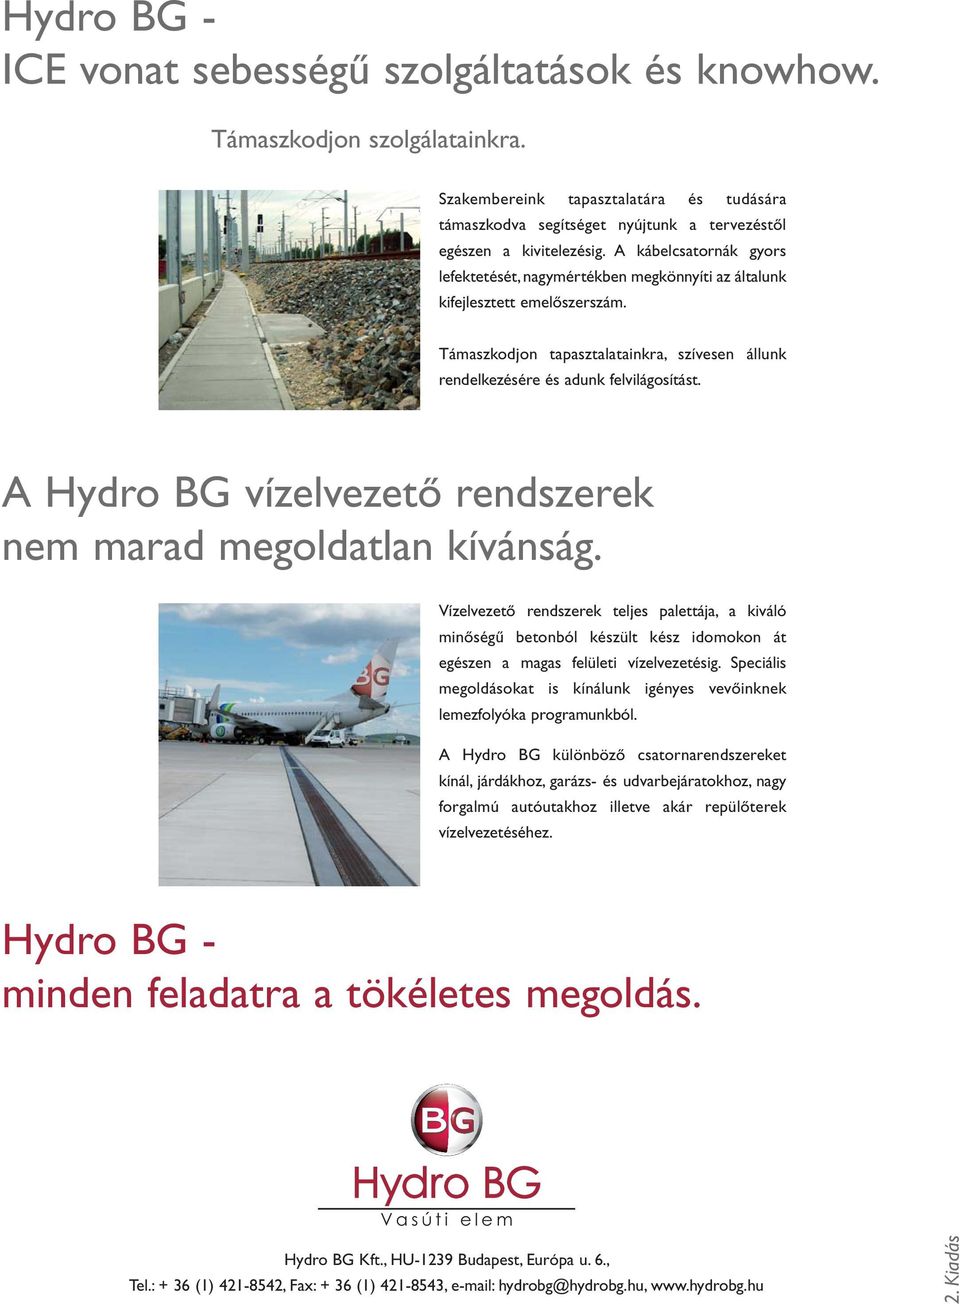 A Hydro BG vízelvezető rendszerek nem marad megoldatlan kívánság. Vízelvezető rendszerek teljes palettája, a kiváló minőségű betonból készült kész idomokon át egészen a magas felületi vízelvezetésig.